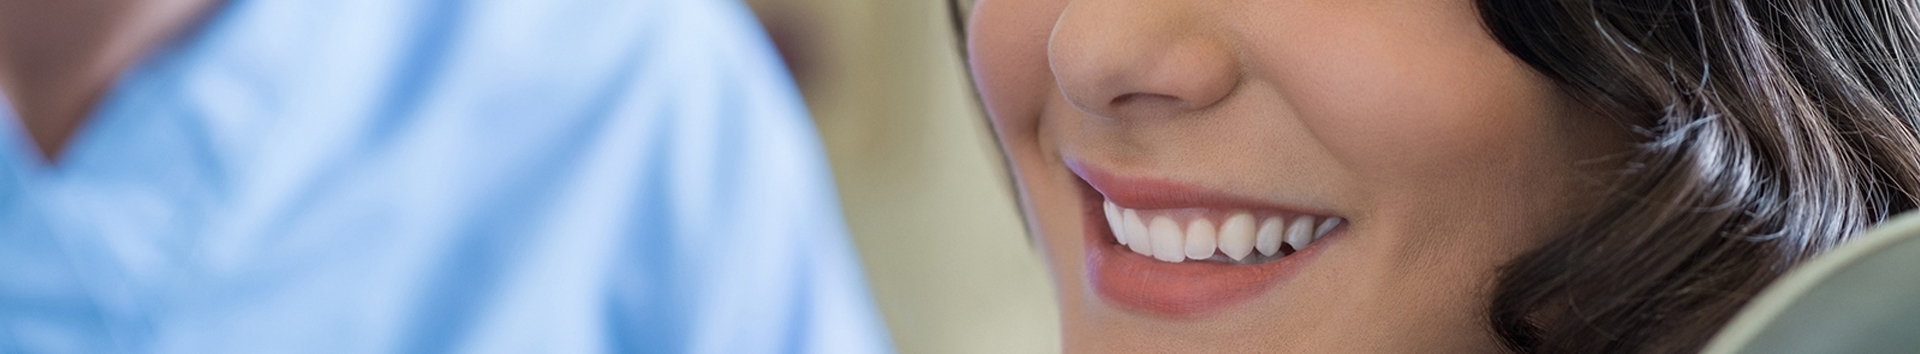 O melhor plano odontológico que vai mudar sua vida